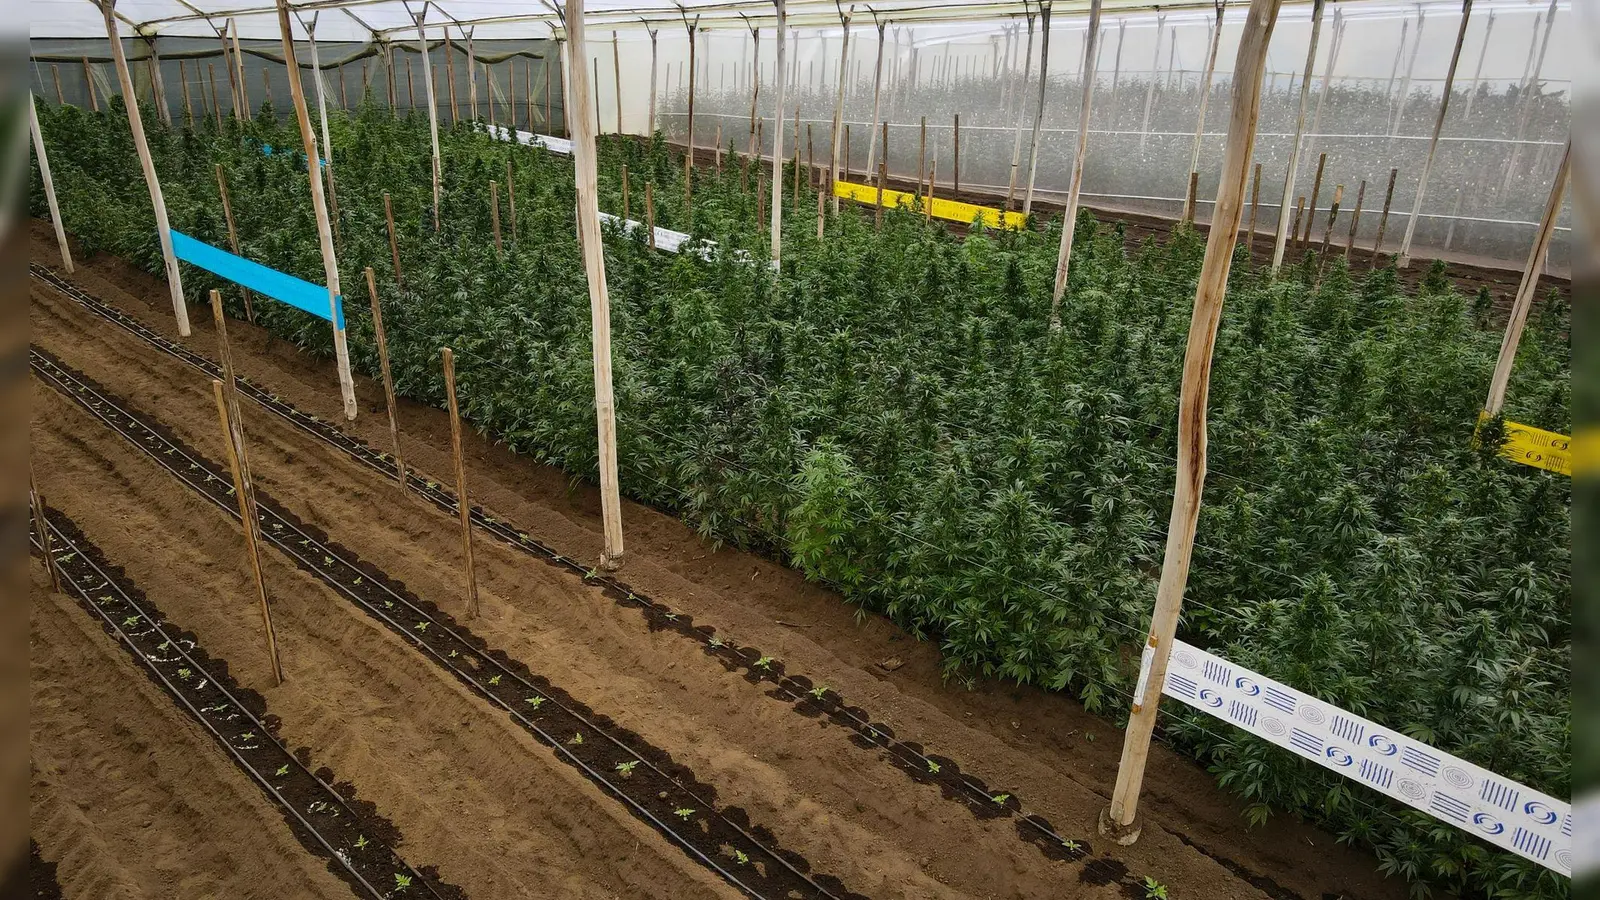 Cannabispflanzen in einem Gewächshaus in Ecuador, in dem Cannabis für medizinische Zwecke angebaut wird. (Foto: David Diaz ARcos/dpa)